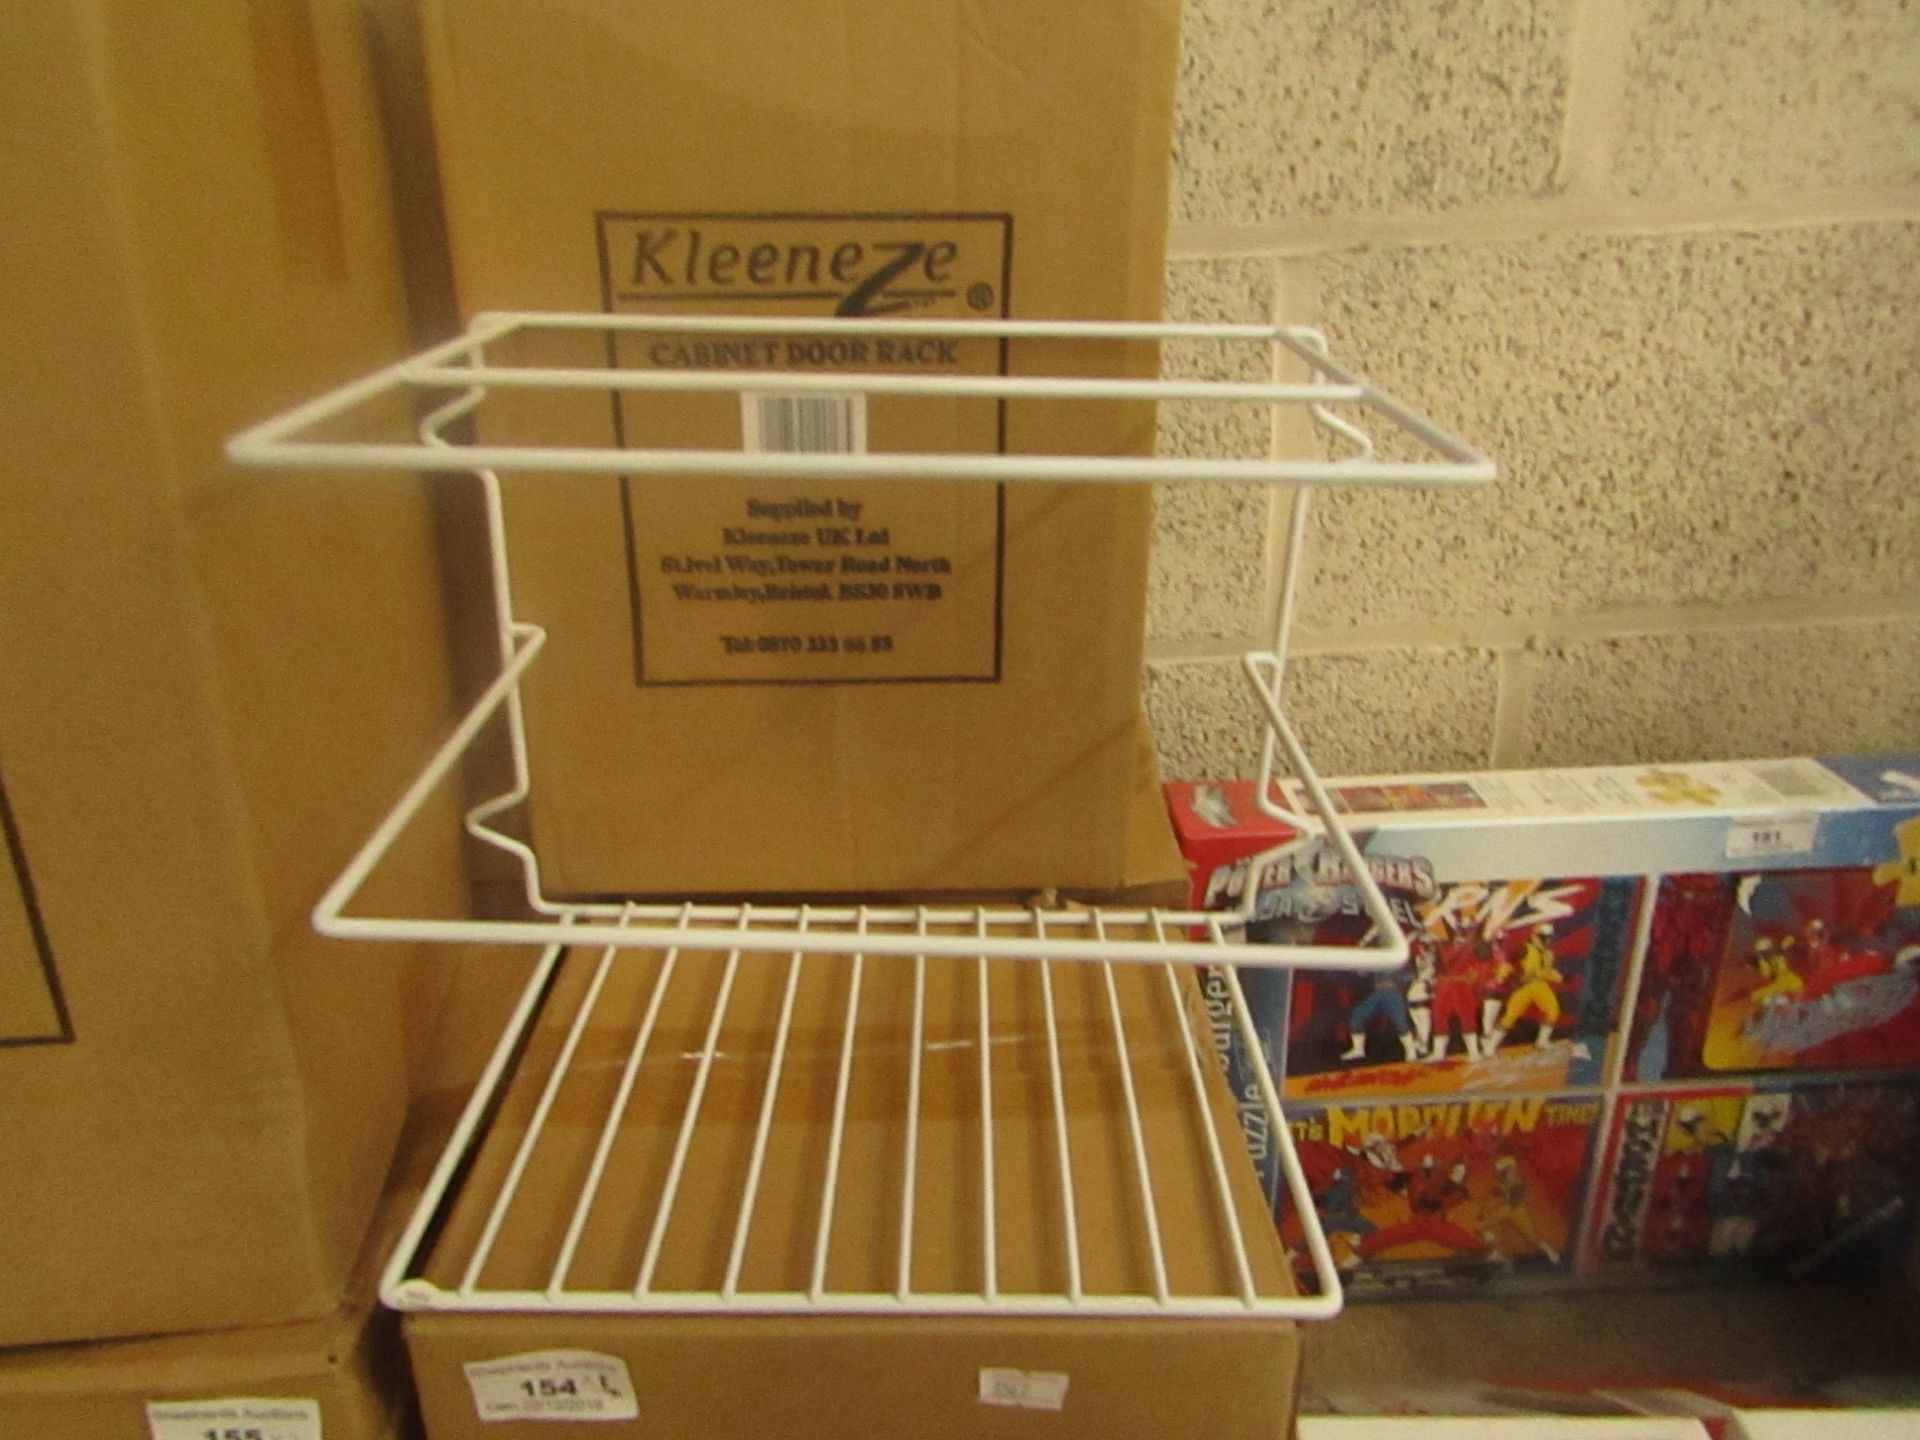 3X Kleezeze - Cabinet door rack (white) boxed.